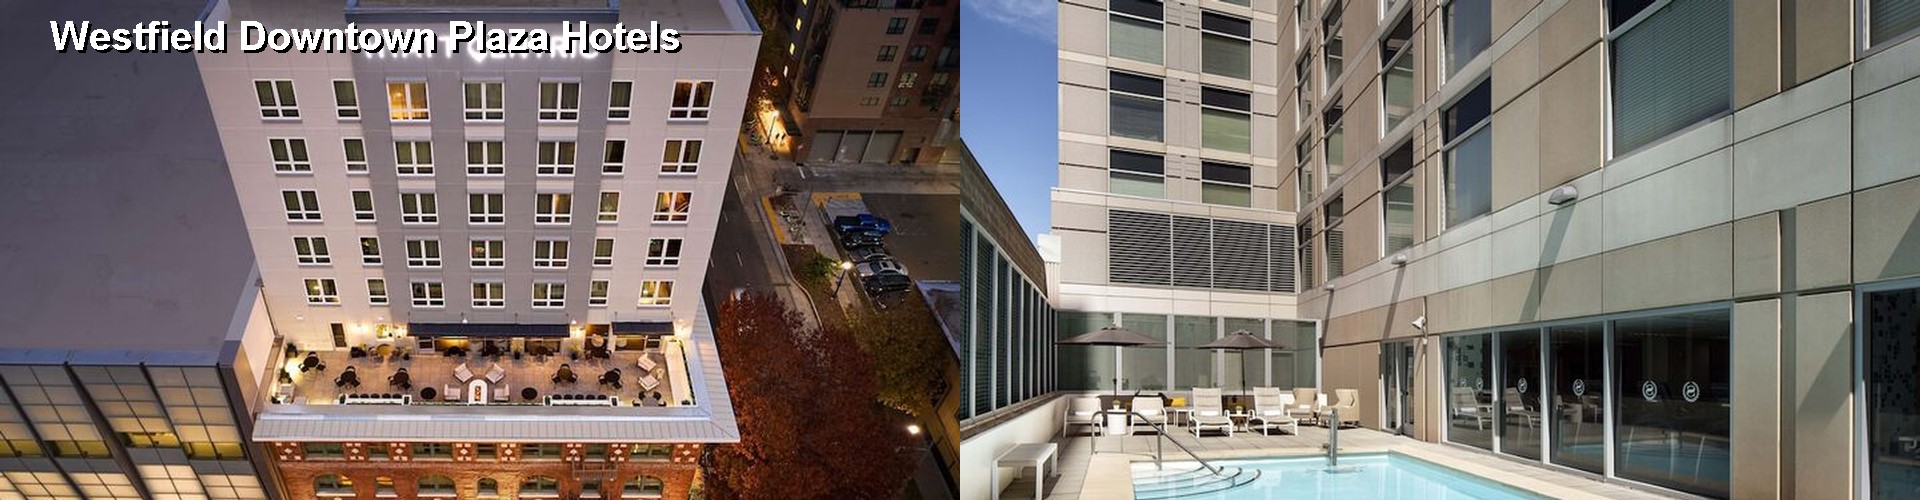 5 Best Hotels near Westfield Downtown Plaza